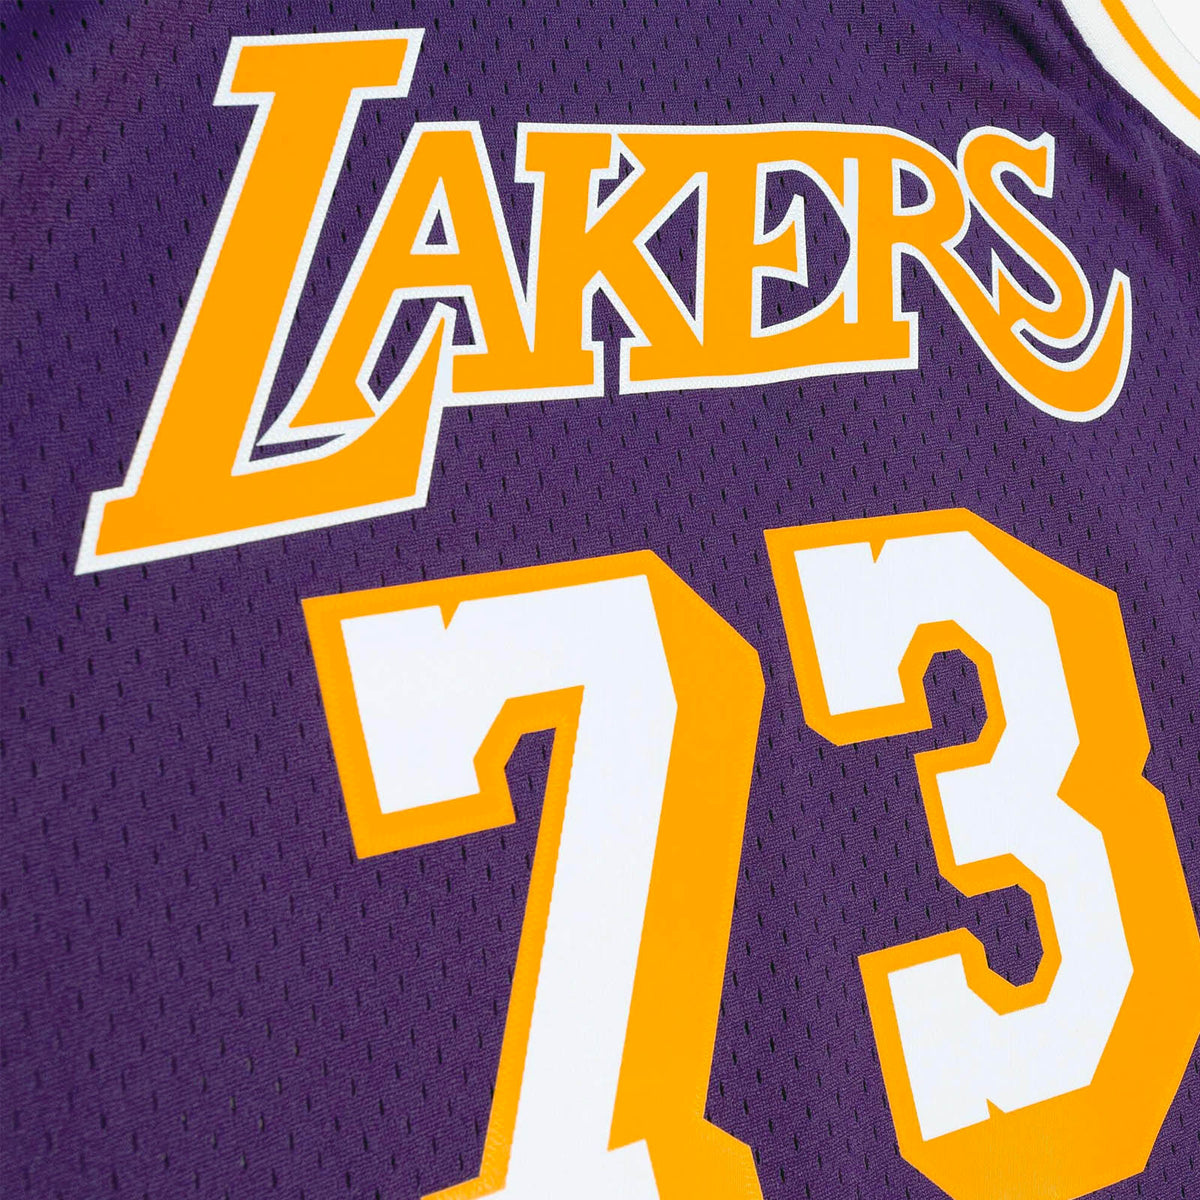 Dennis Rodman Los Angeles Lakers 98-99 HWC Swingman Jersey - Purple